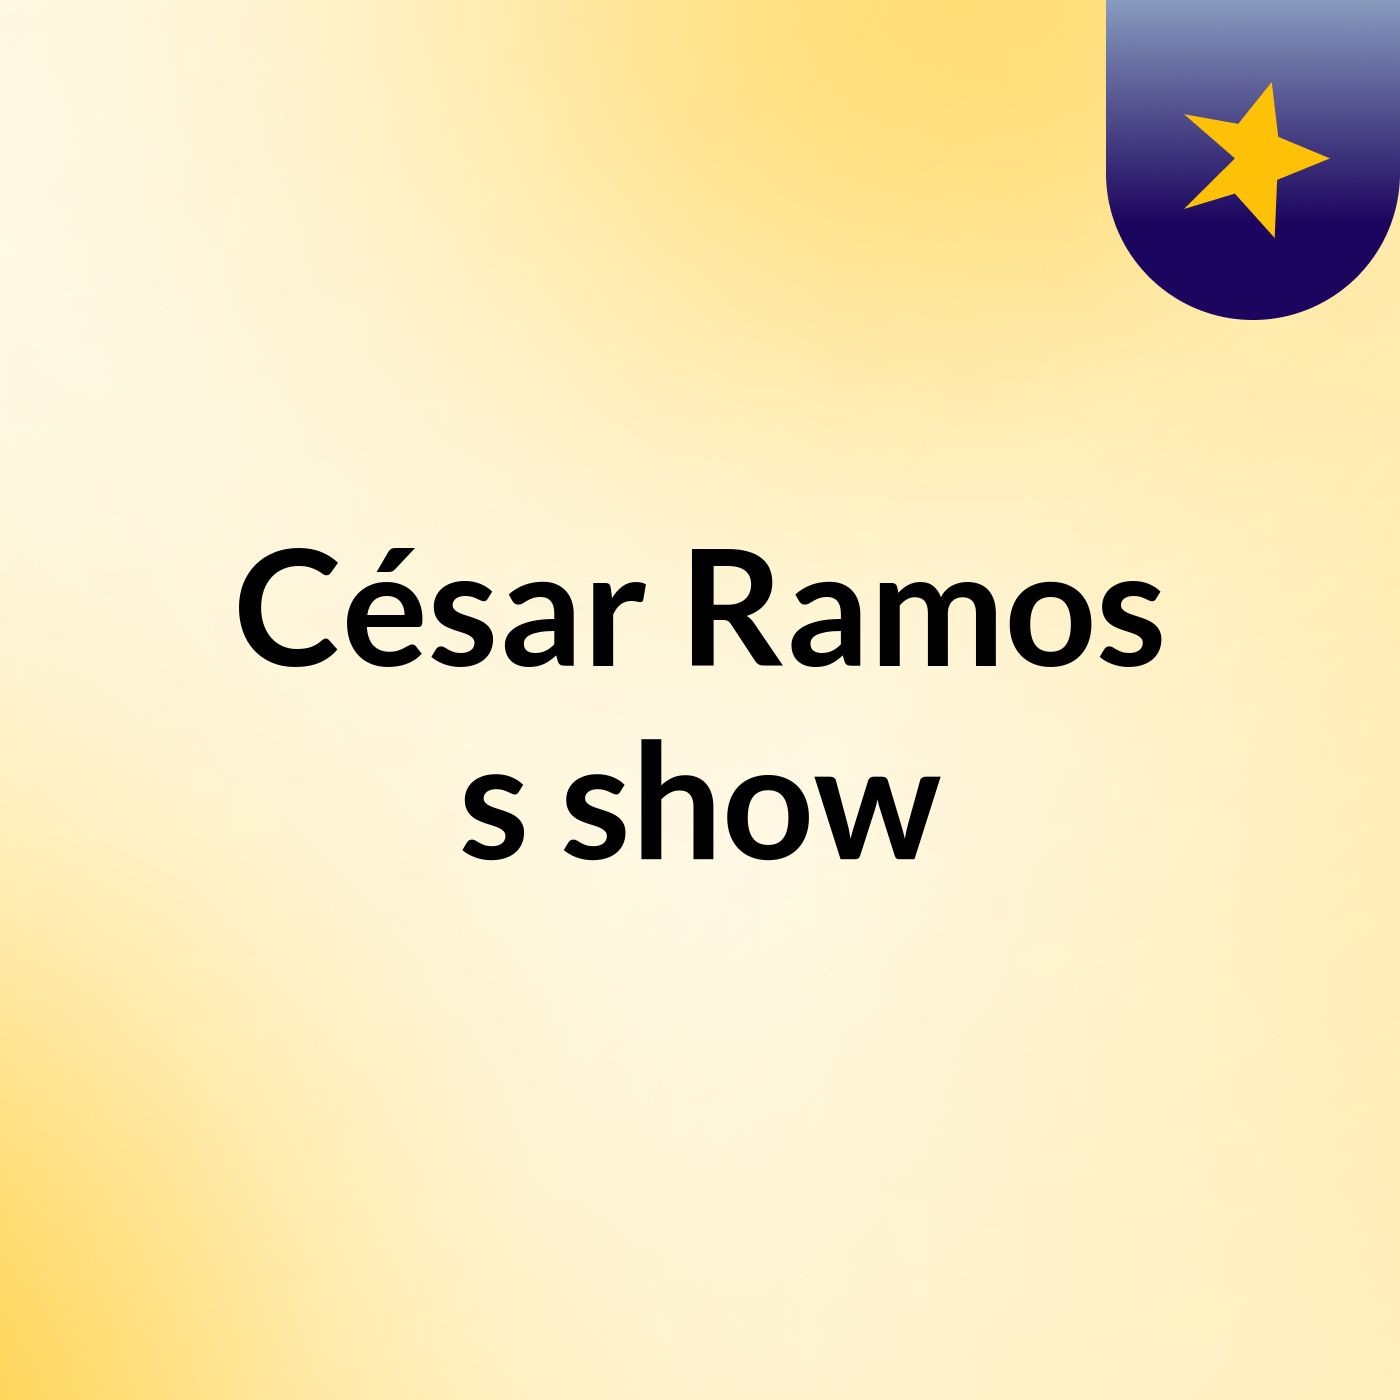 César Ramos's show